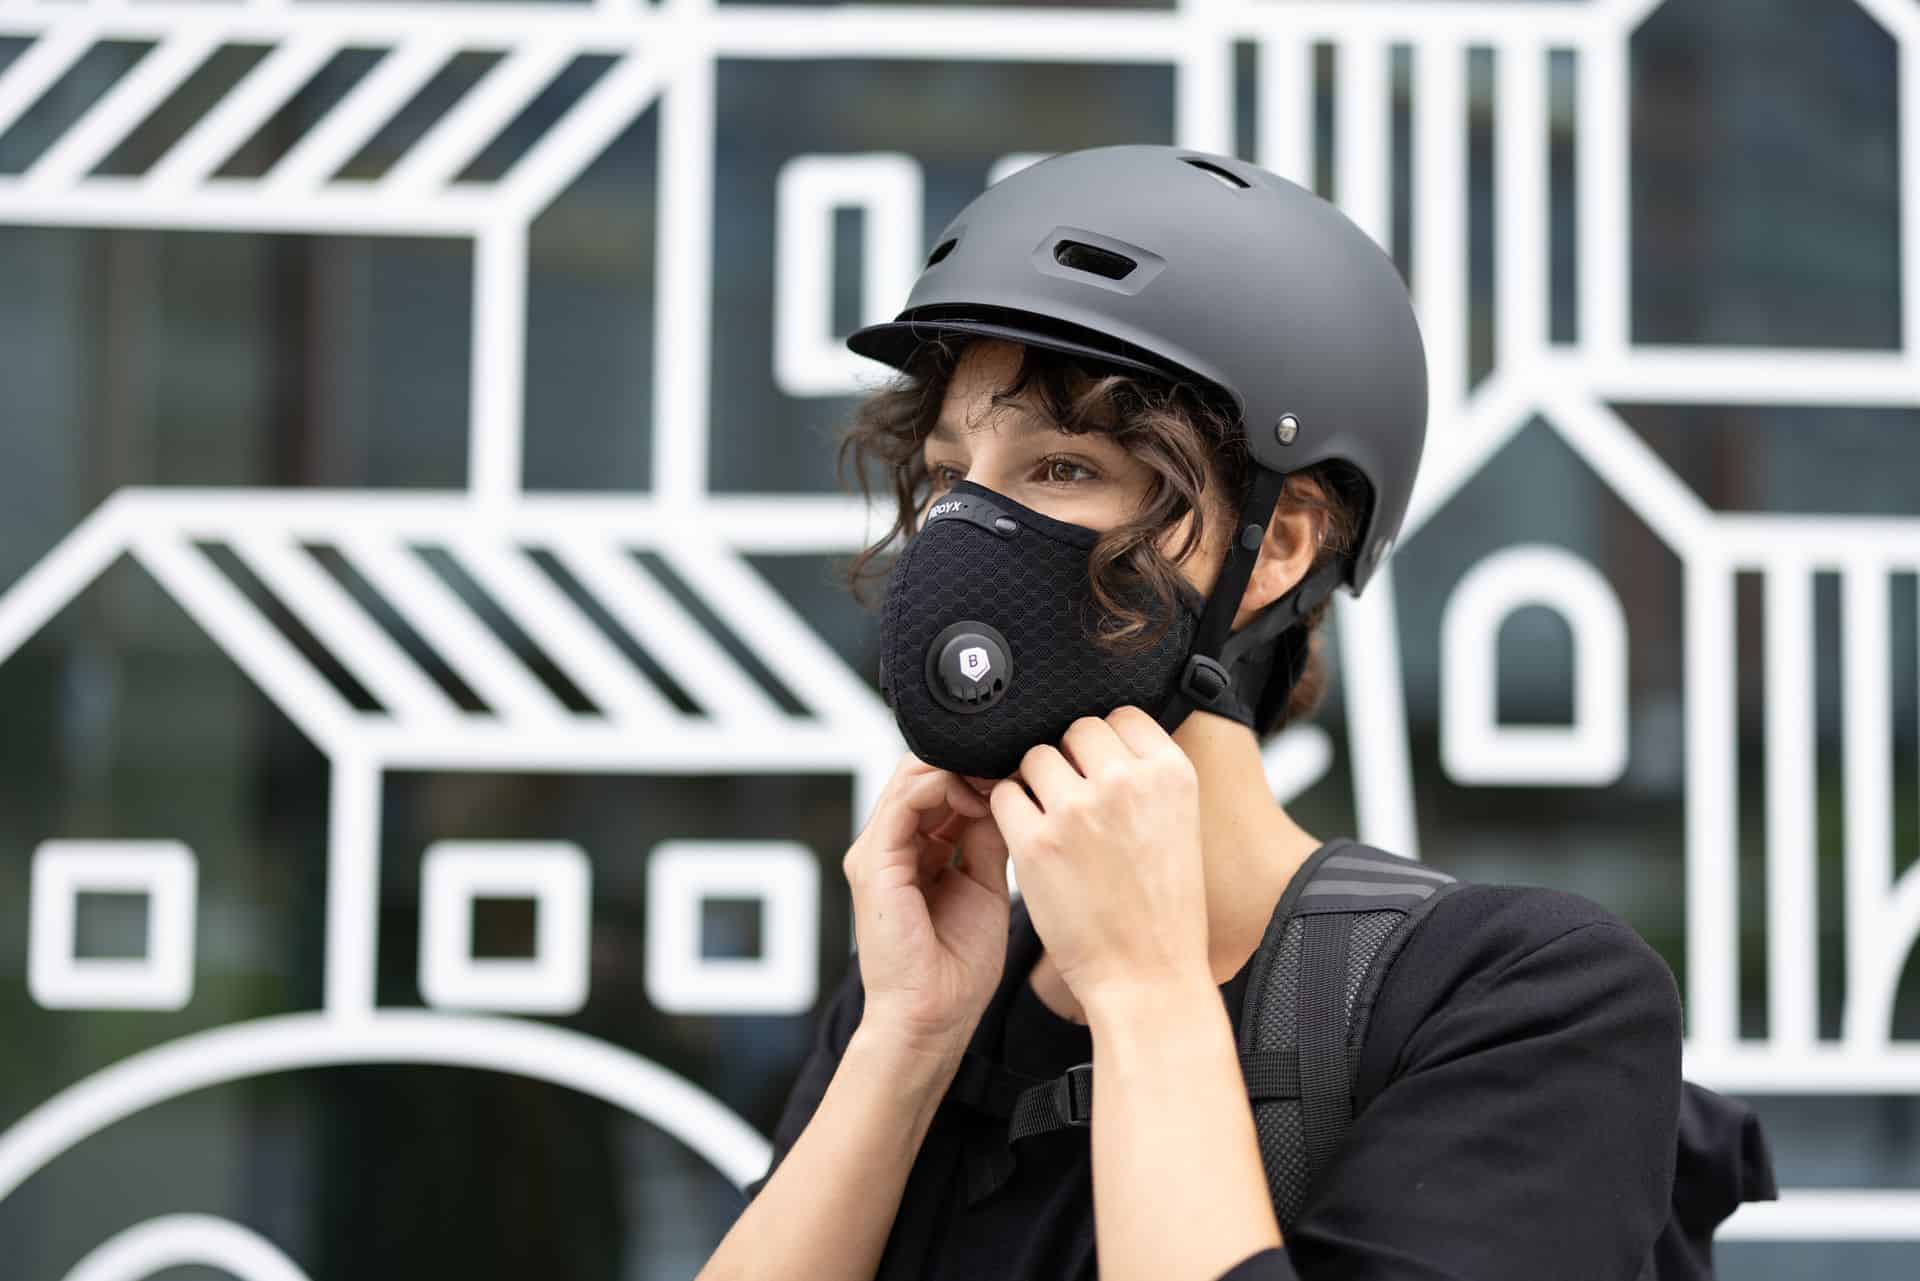 Maska antysmogowa z dobrym filtrem. Która chroni najlepiej przed zanieczyszczeniami?